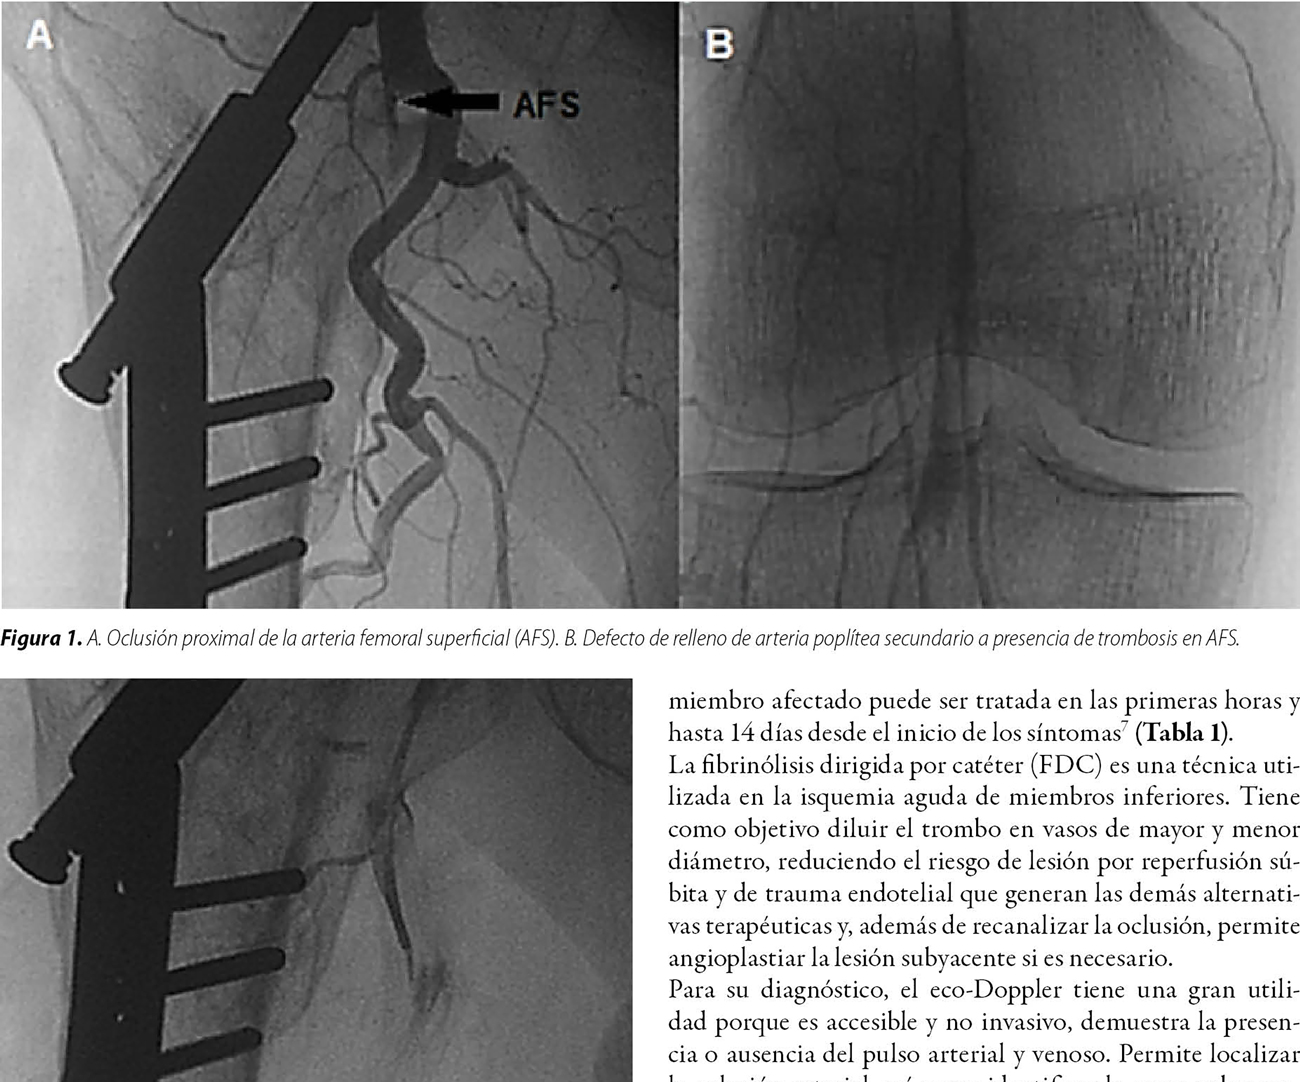 Oclusión aguda de arteria femoral superficial. Resolución endovascular farmacoinvasiva intratrombo